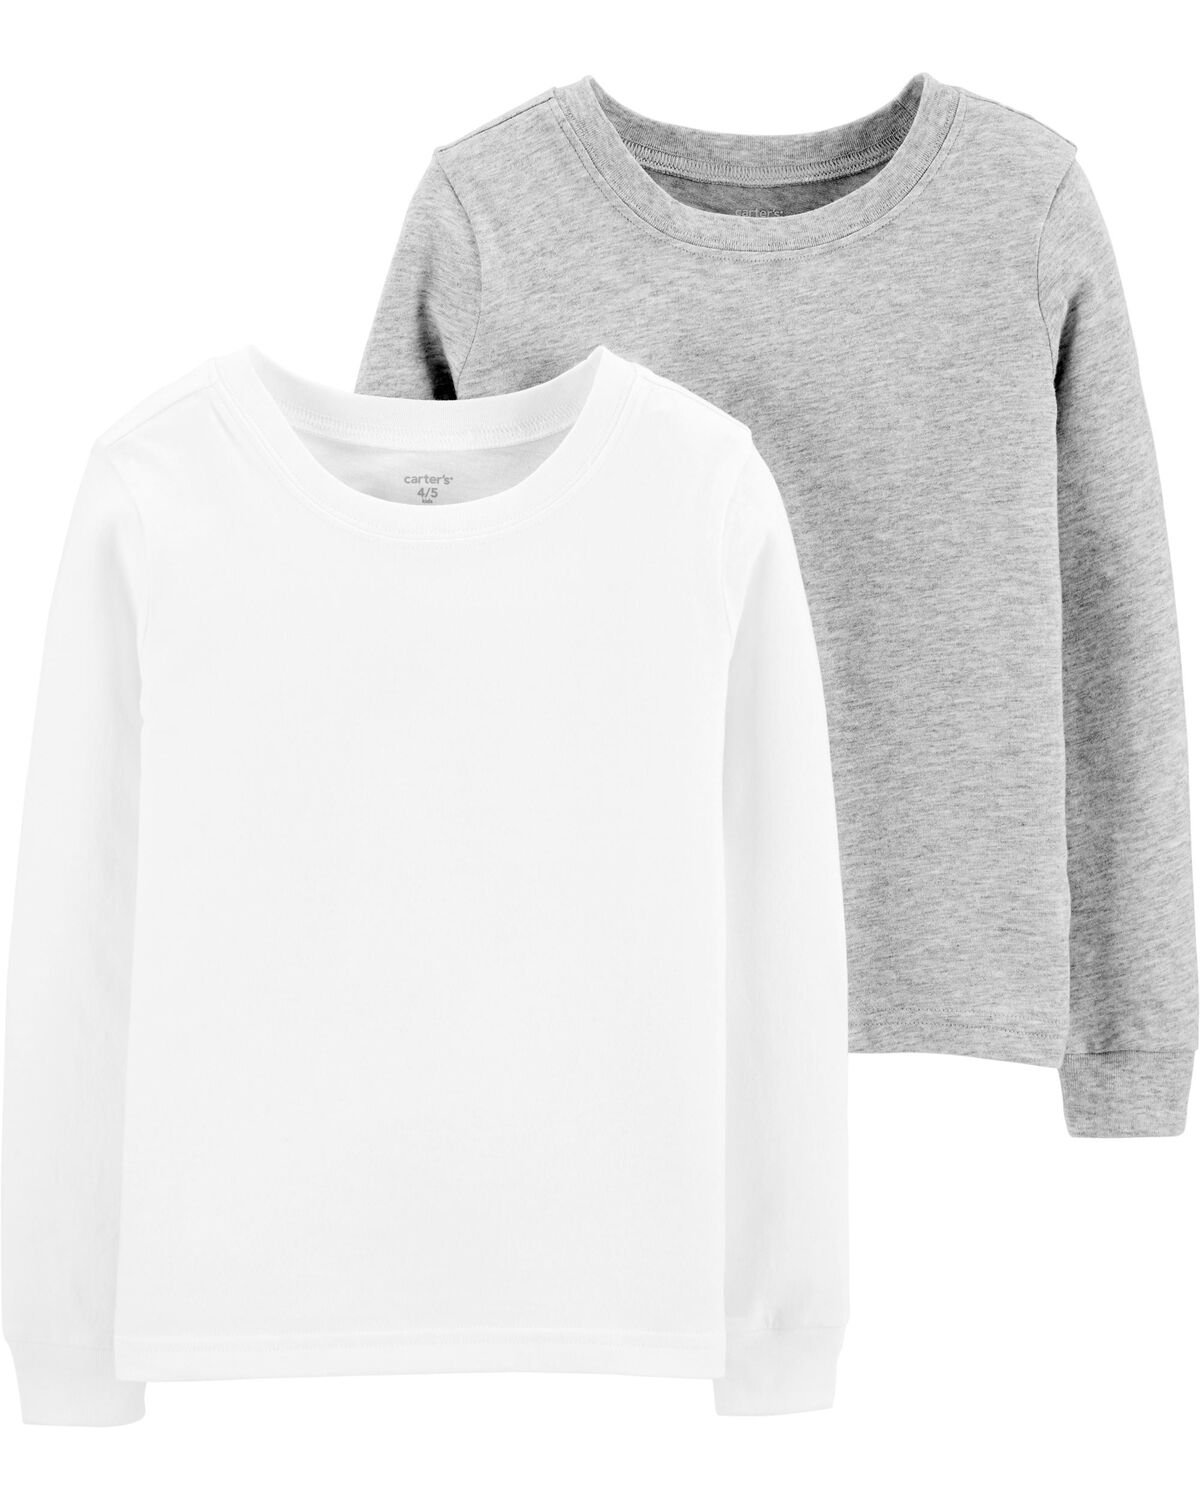 White/Heather 2-Pack Long-Sleeve Undershirts | oshkosh.com